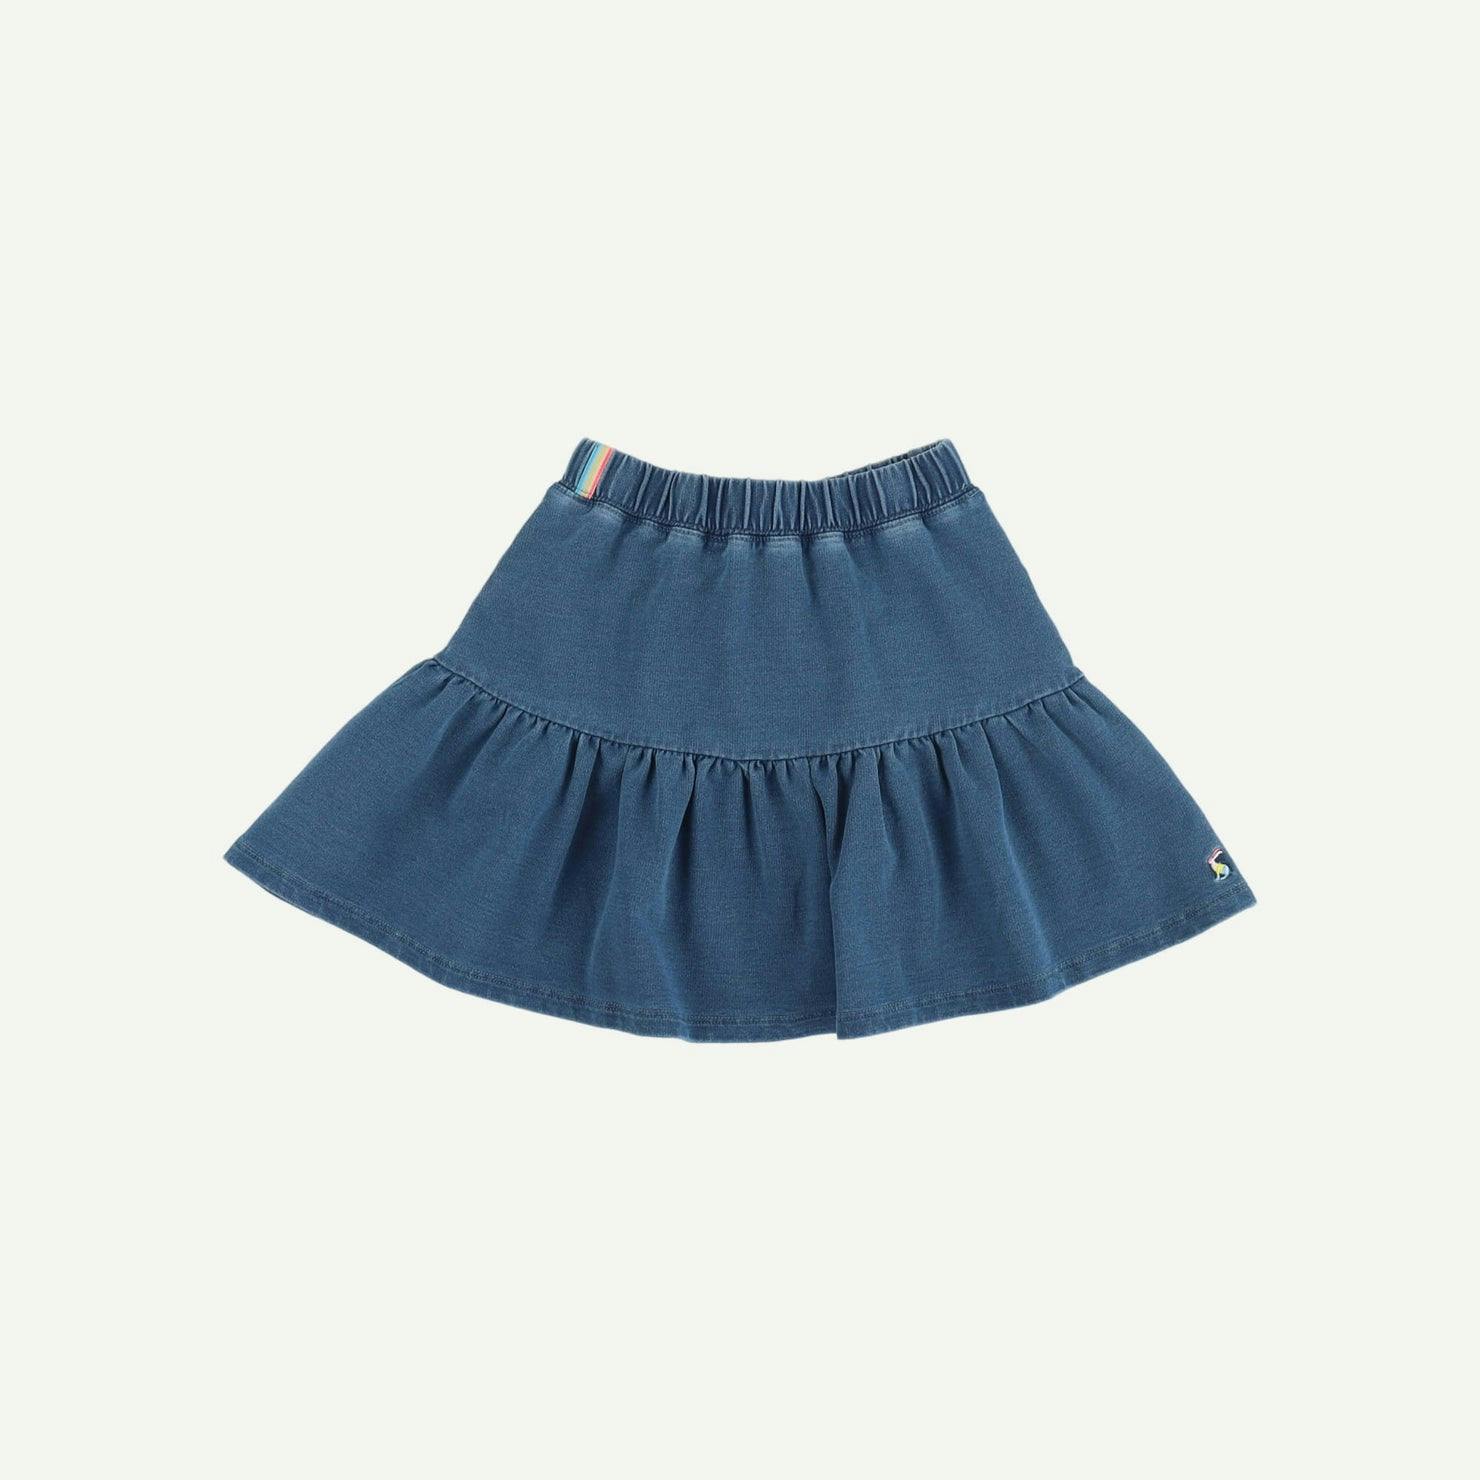 Joules Brand new Blue Skirt